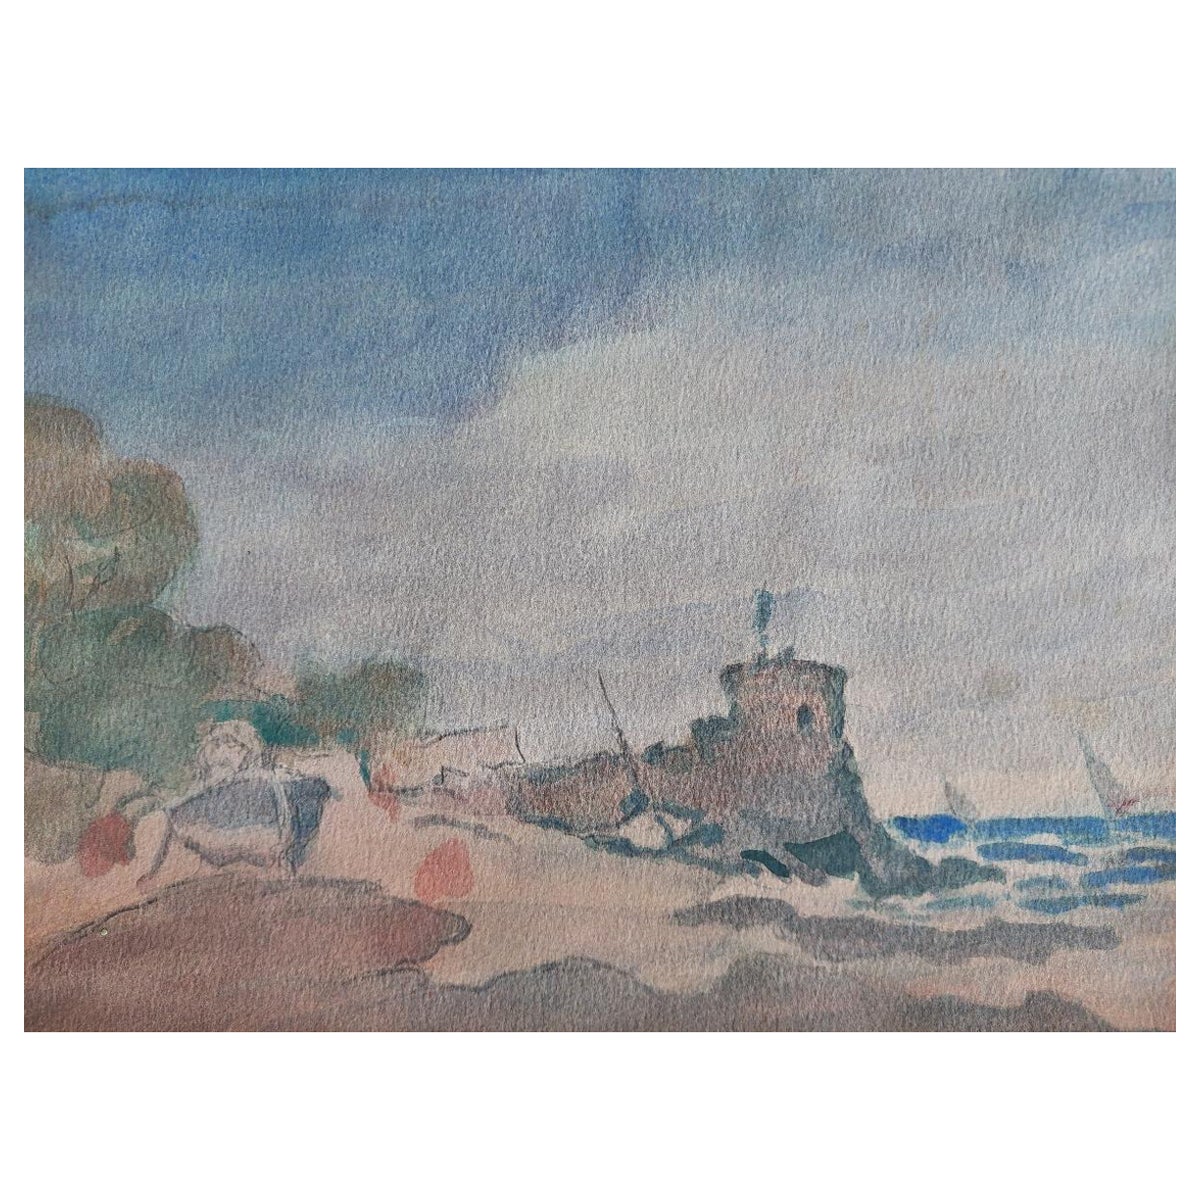 Peinture cubiste française moderniste représentant des bateaux de pêche par la fortification côtière